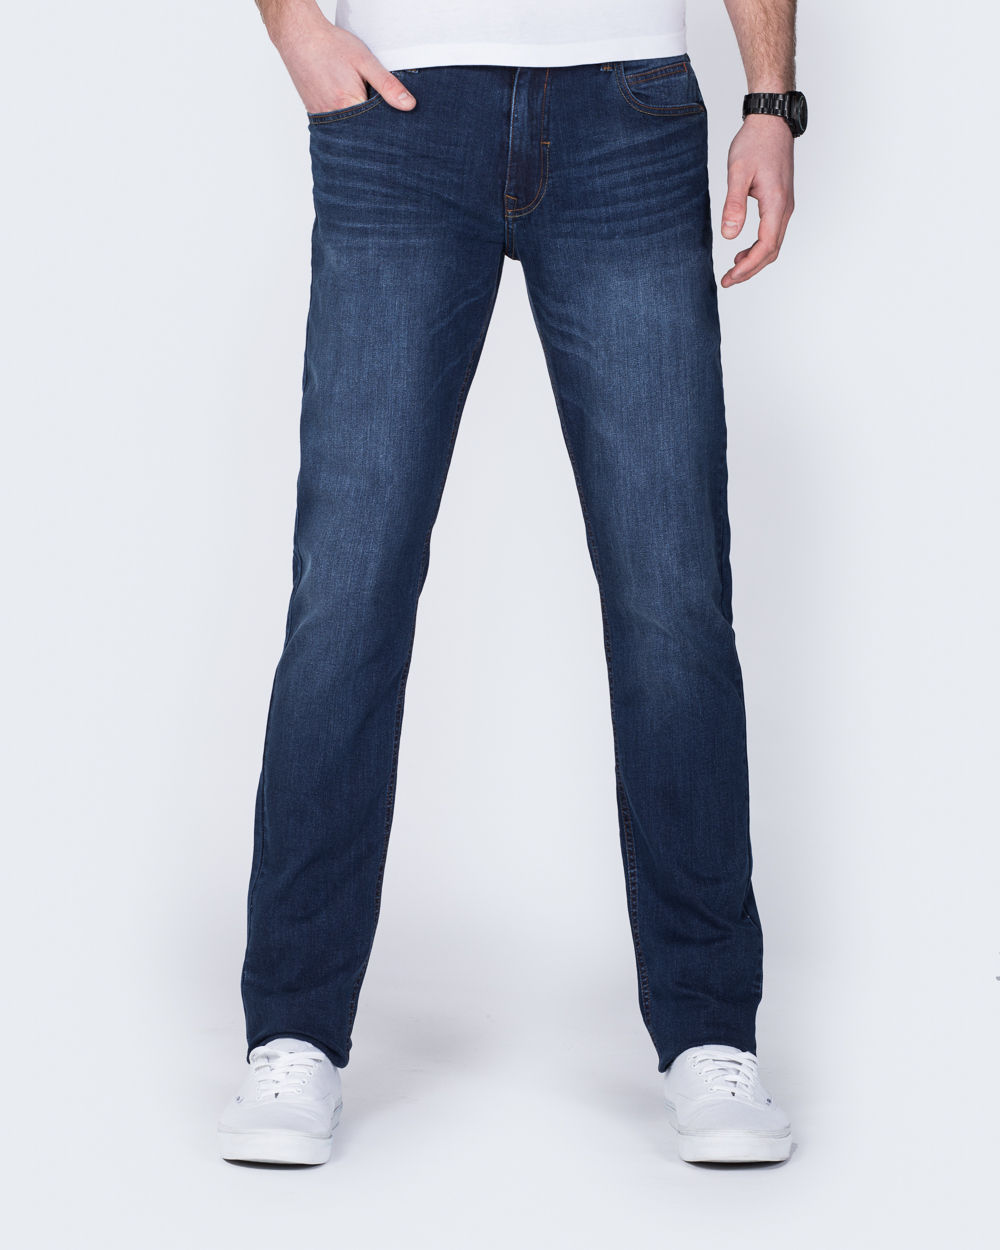 Mish Mash Reece Tall Jeans | 2tall.com